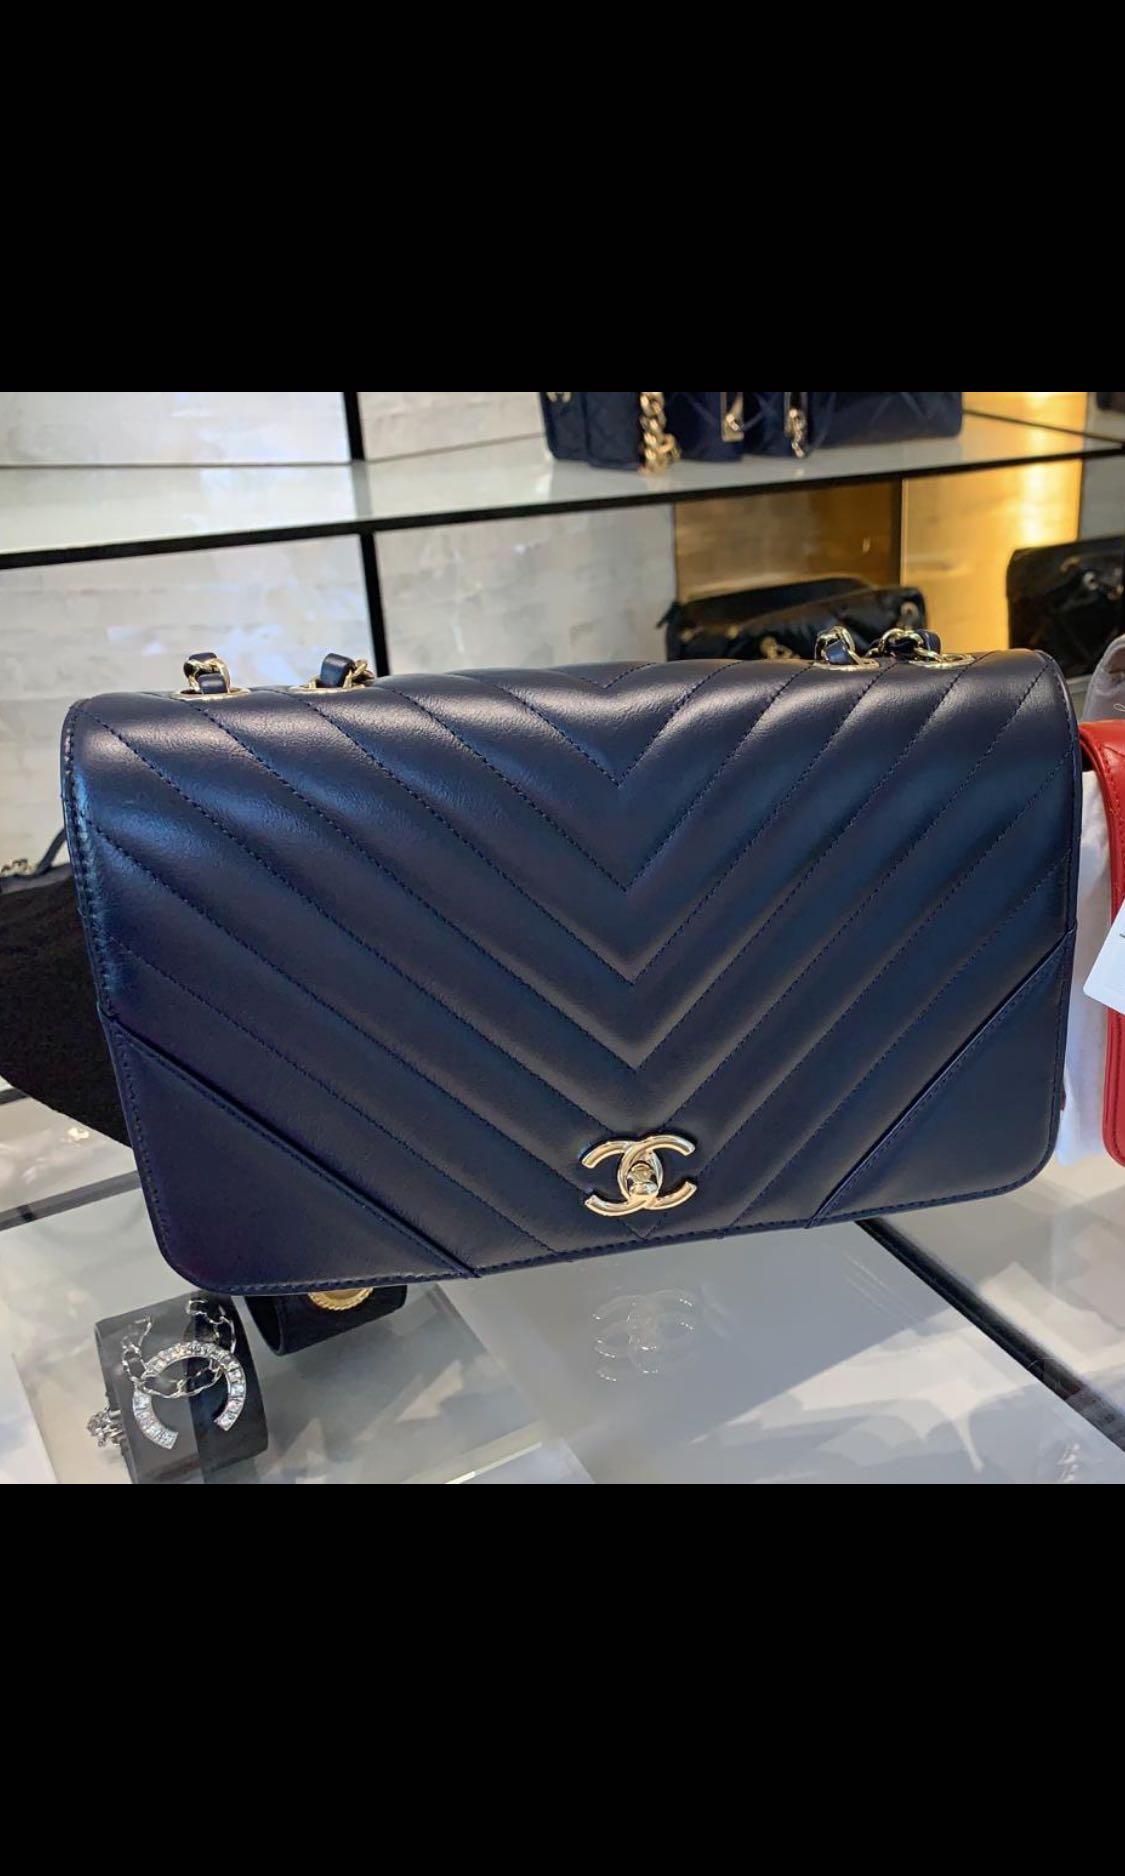 Chanel Surpique Chevron Leather Flap Crossbody Bag